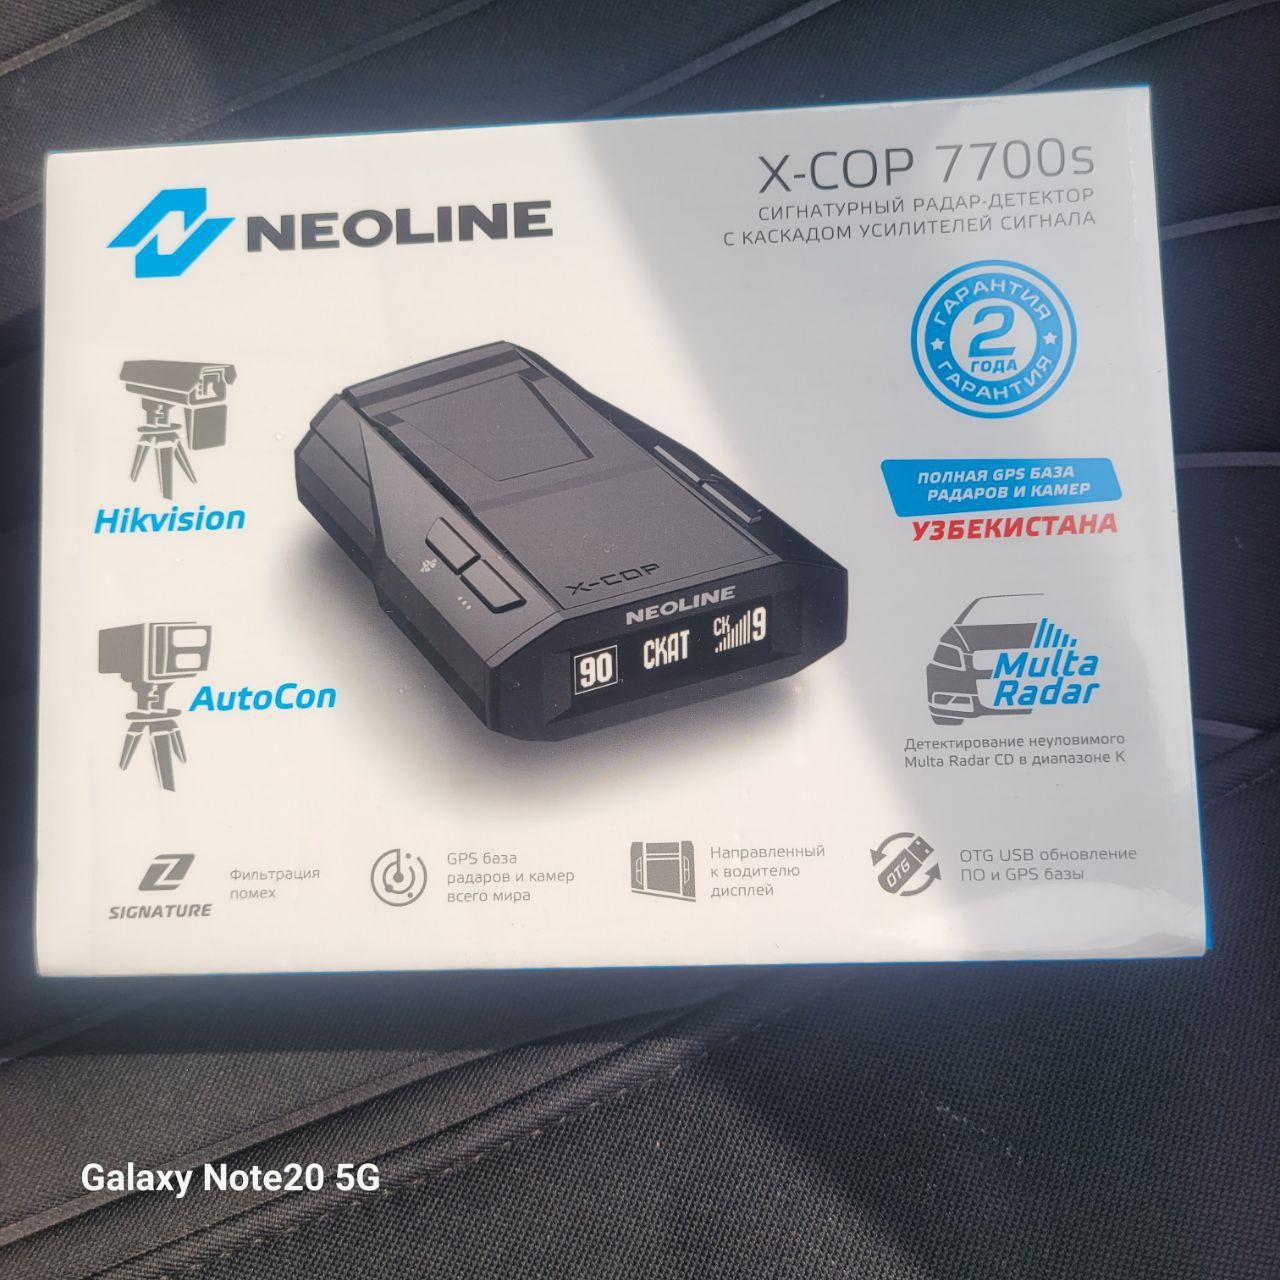 Neoline 7700 s yangi hali ochilmagan